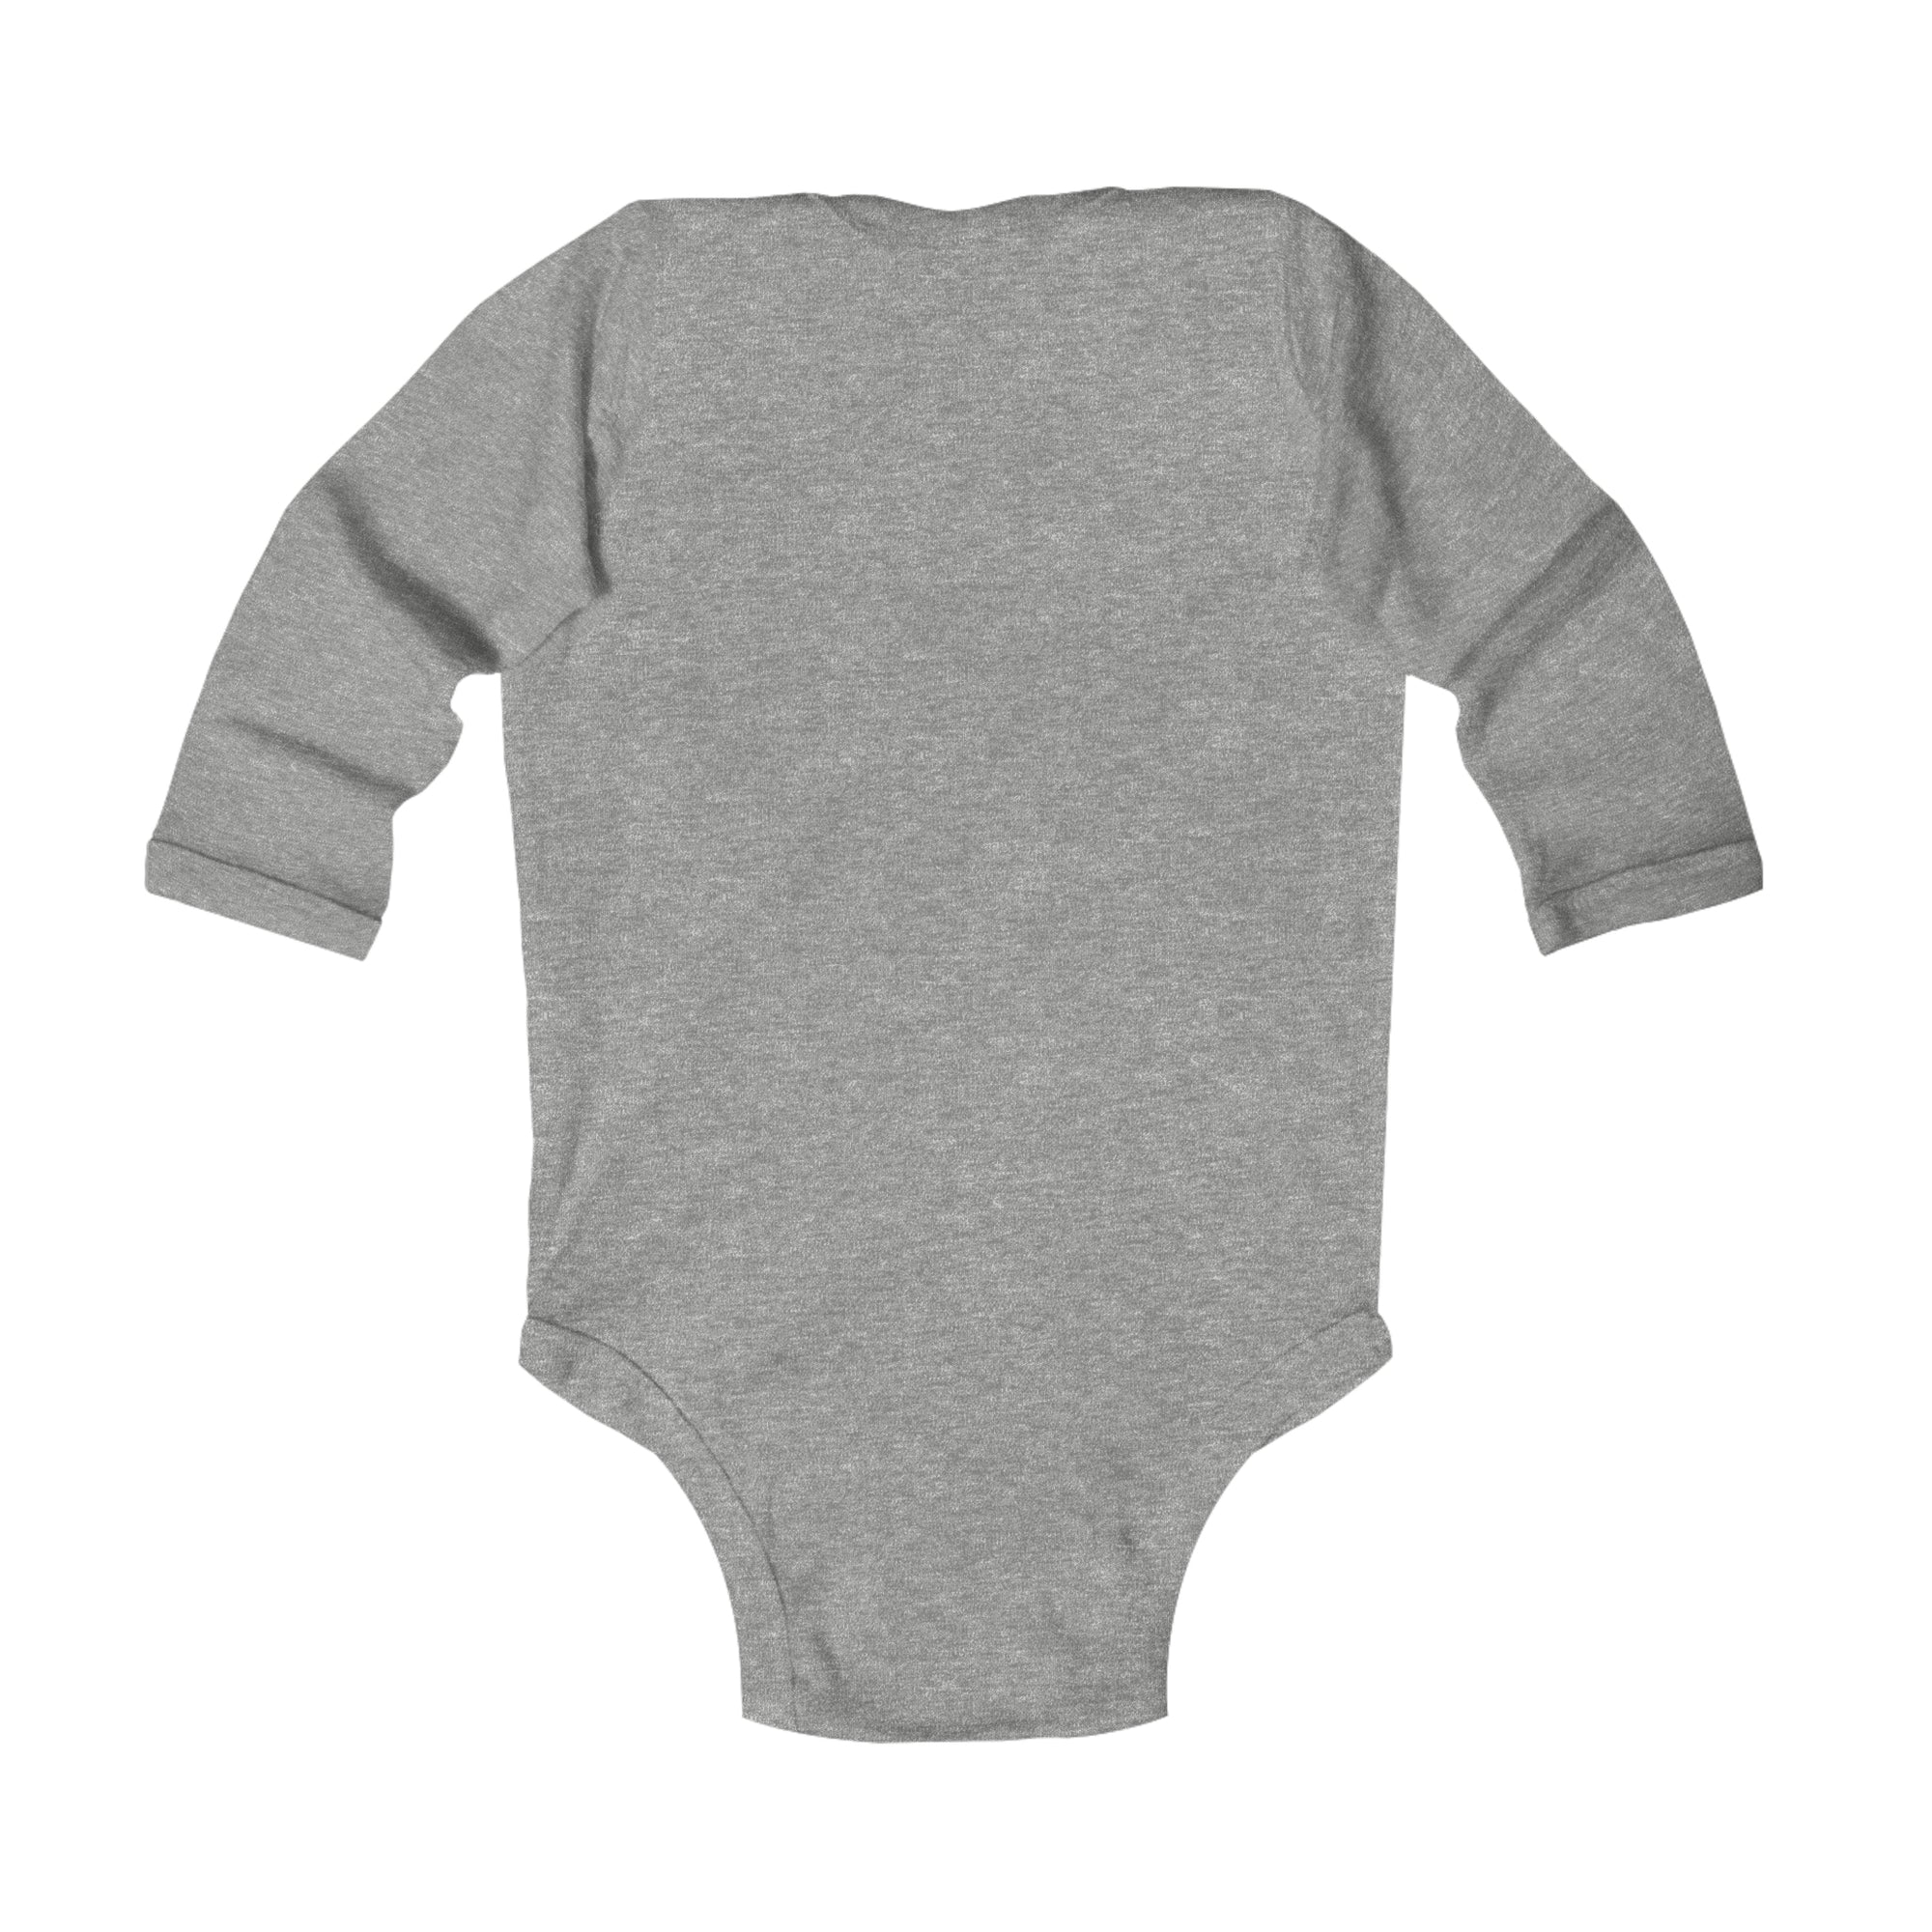 Infant Long Sleeve Bodysuit - Light Up the Night